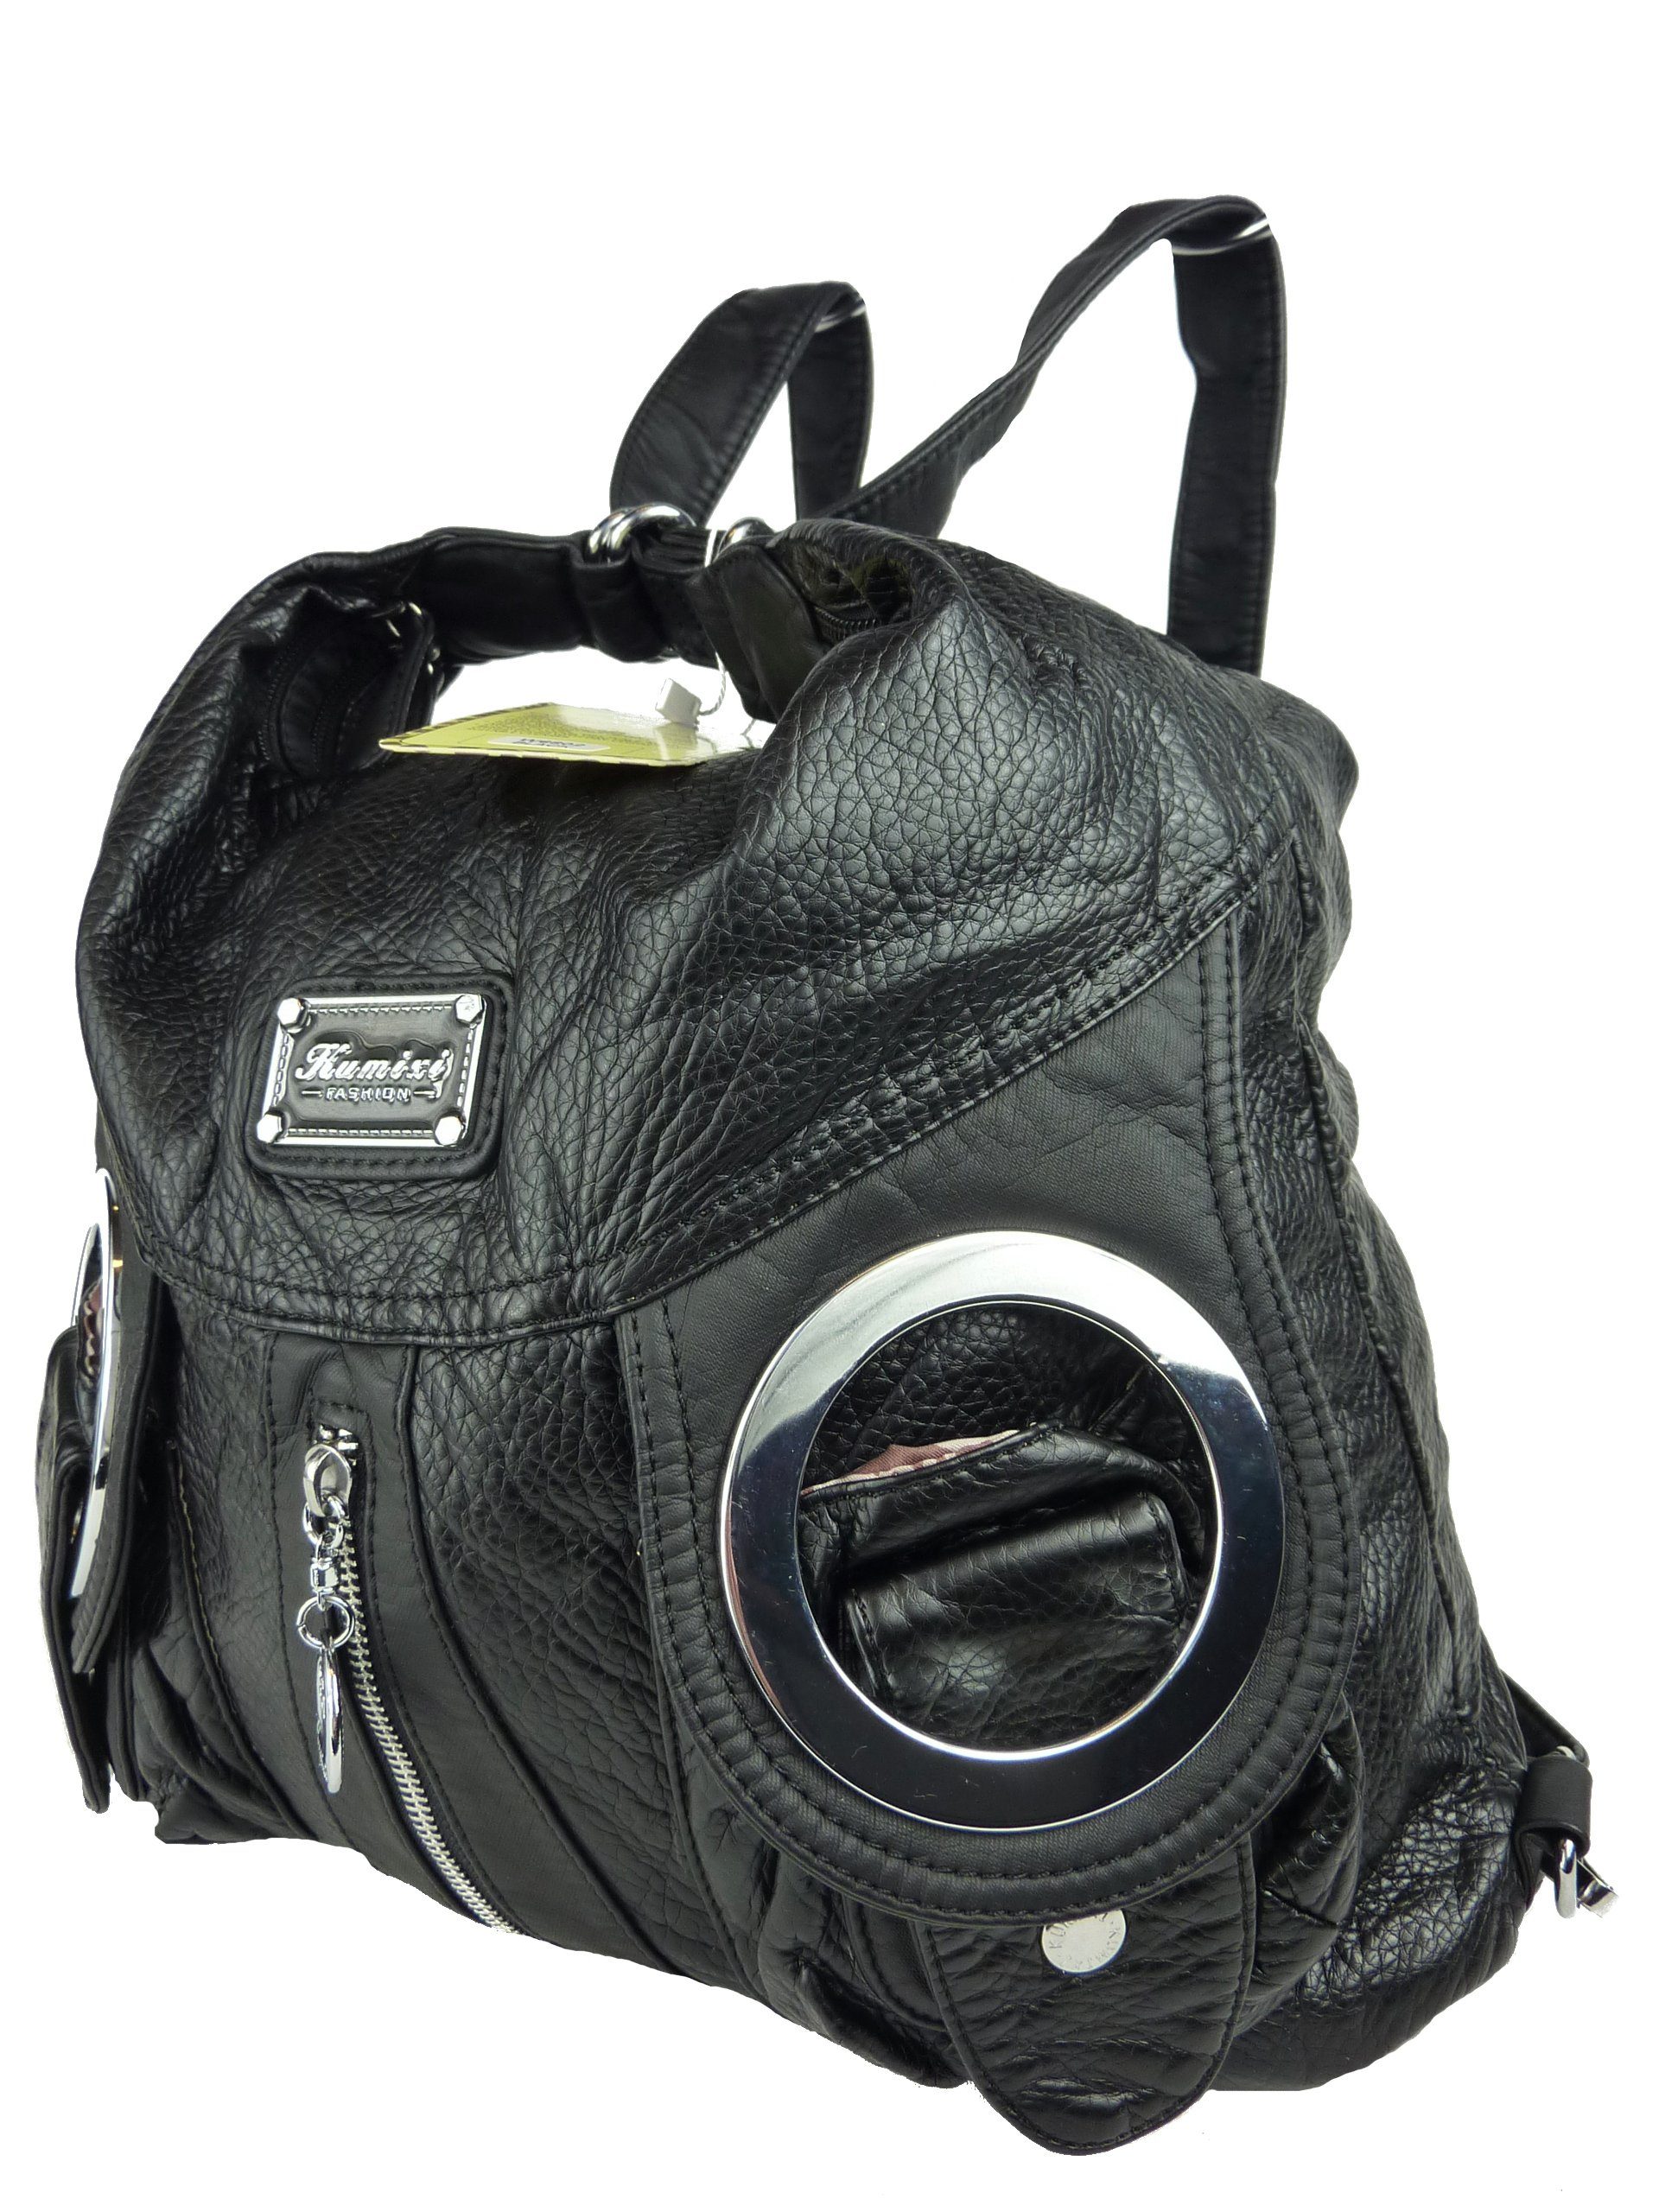 Taschen4life Schultertasche Rucksacktasche W6802 Multifunktionstasche, Tasche oder Rucksack, verstellbarer Schulterriemen, als Schultertasche oder Rucksack tragbar schwarz